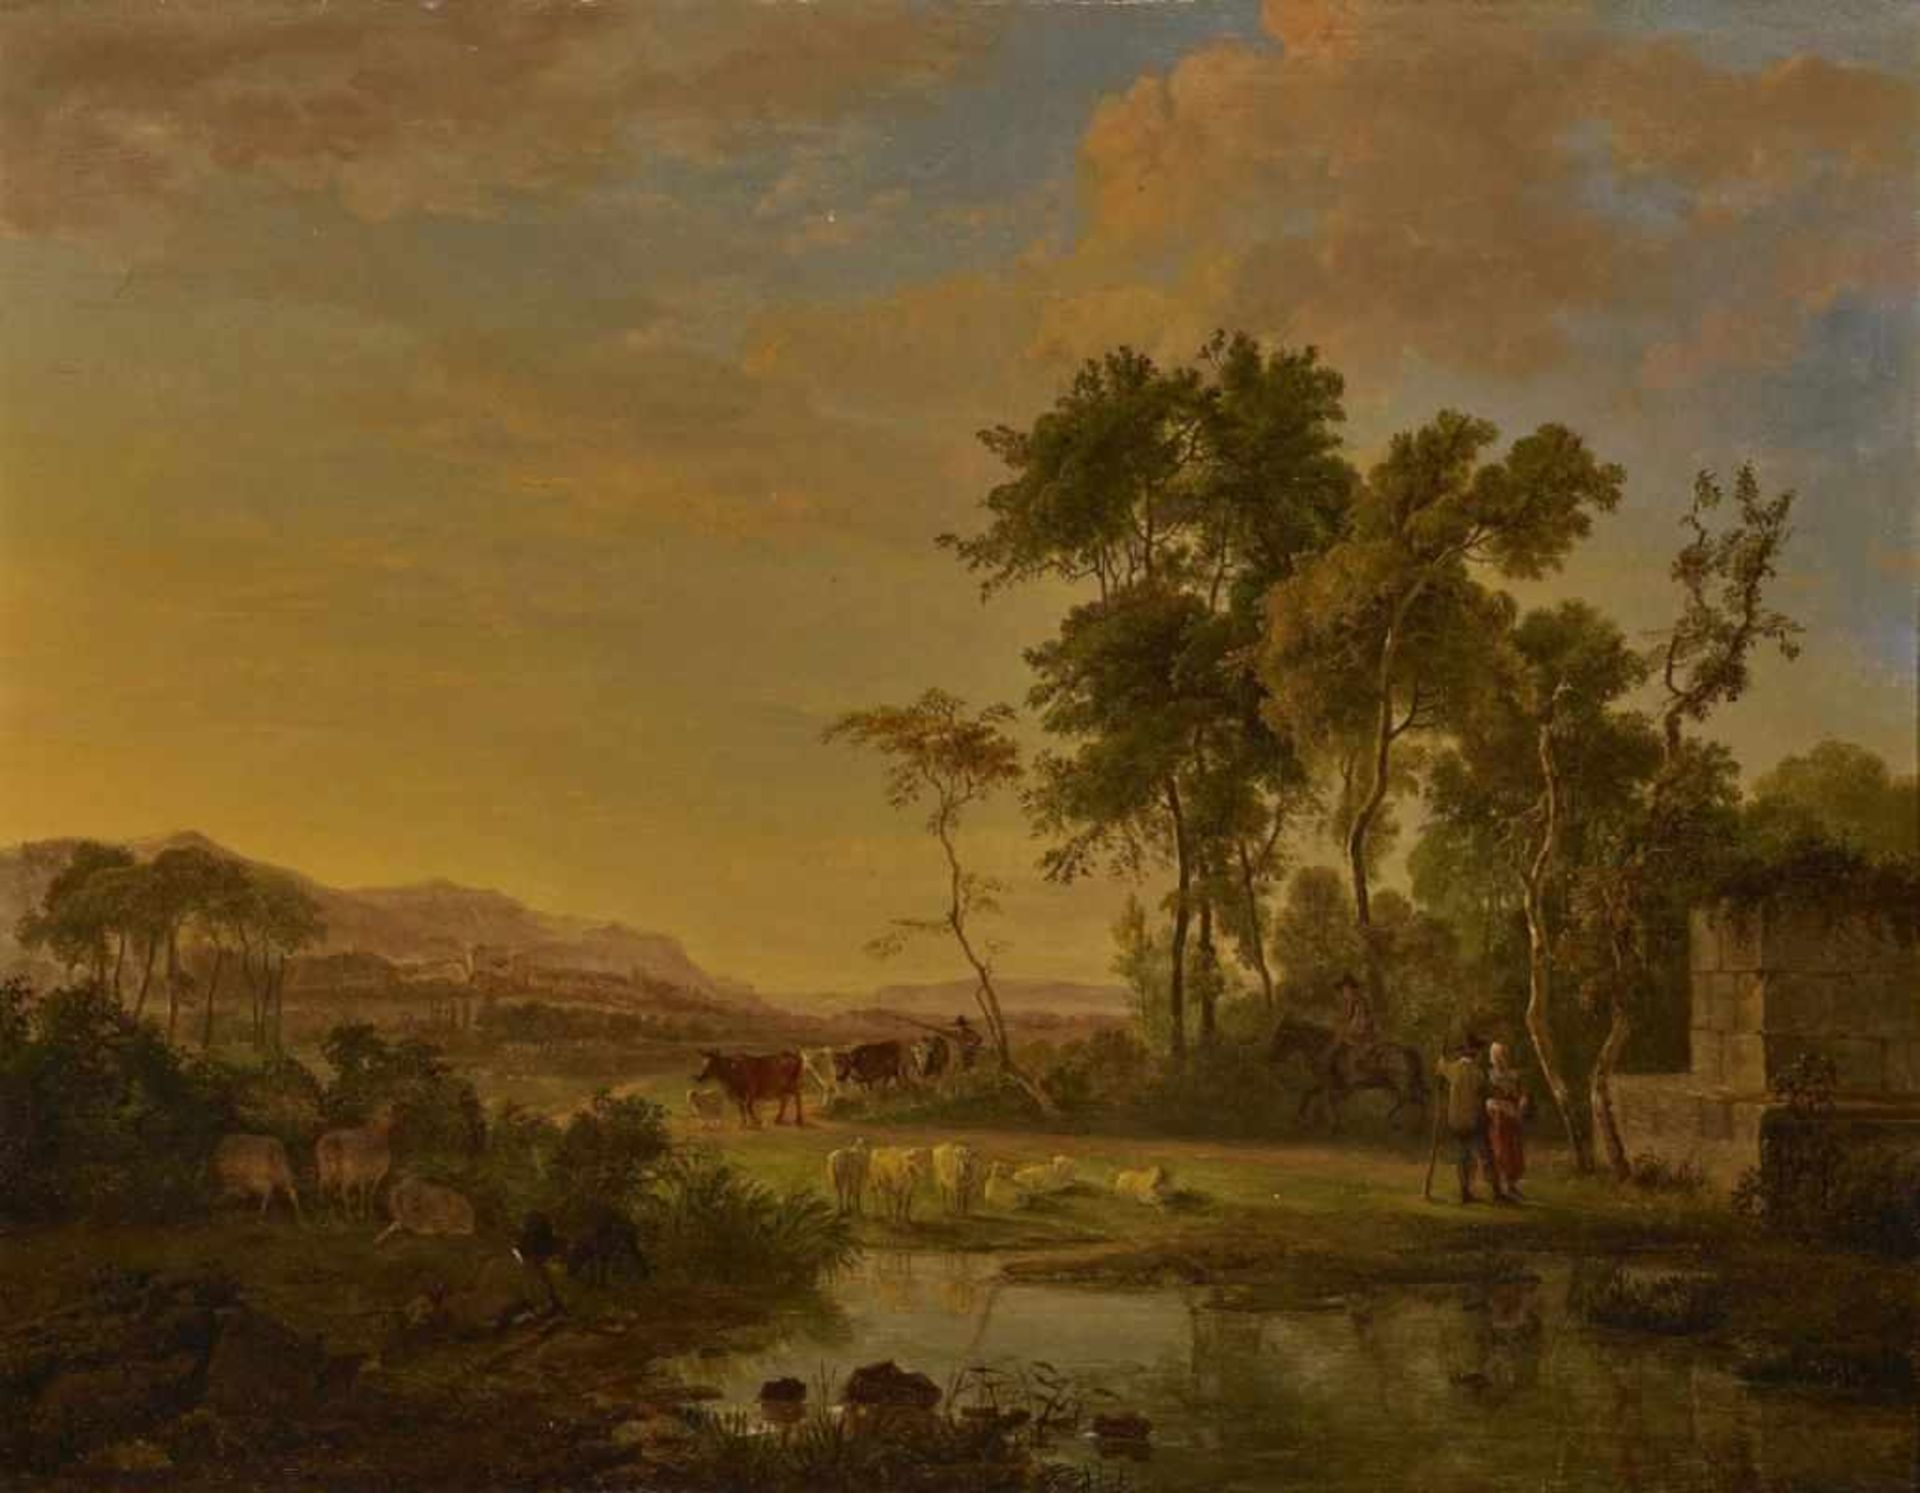 HACCOU, JOHANNES CORNELIS 1798 Middelburg - 1839 London Südliche Landschaft mit Hirten und Vieh L.